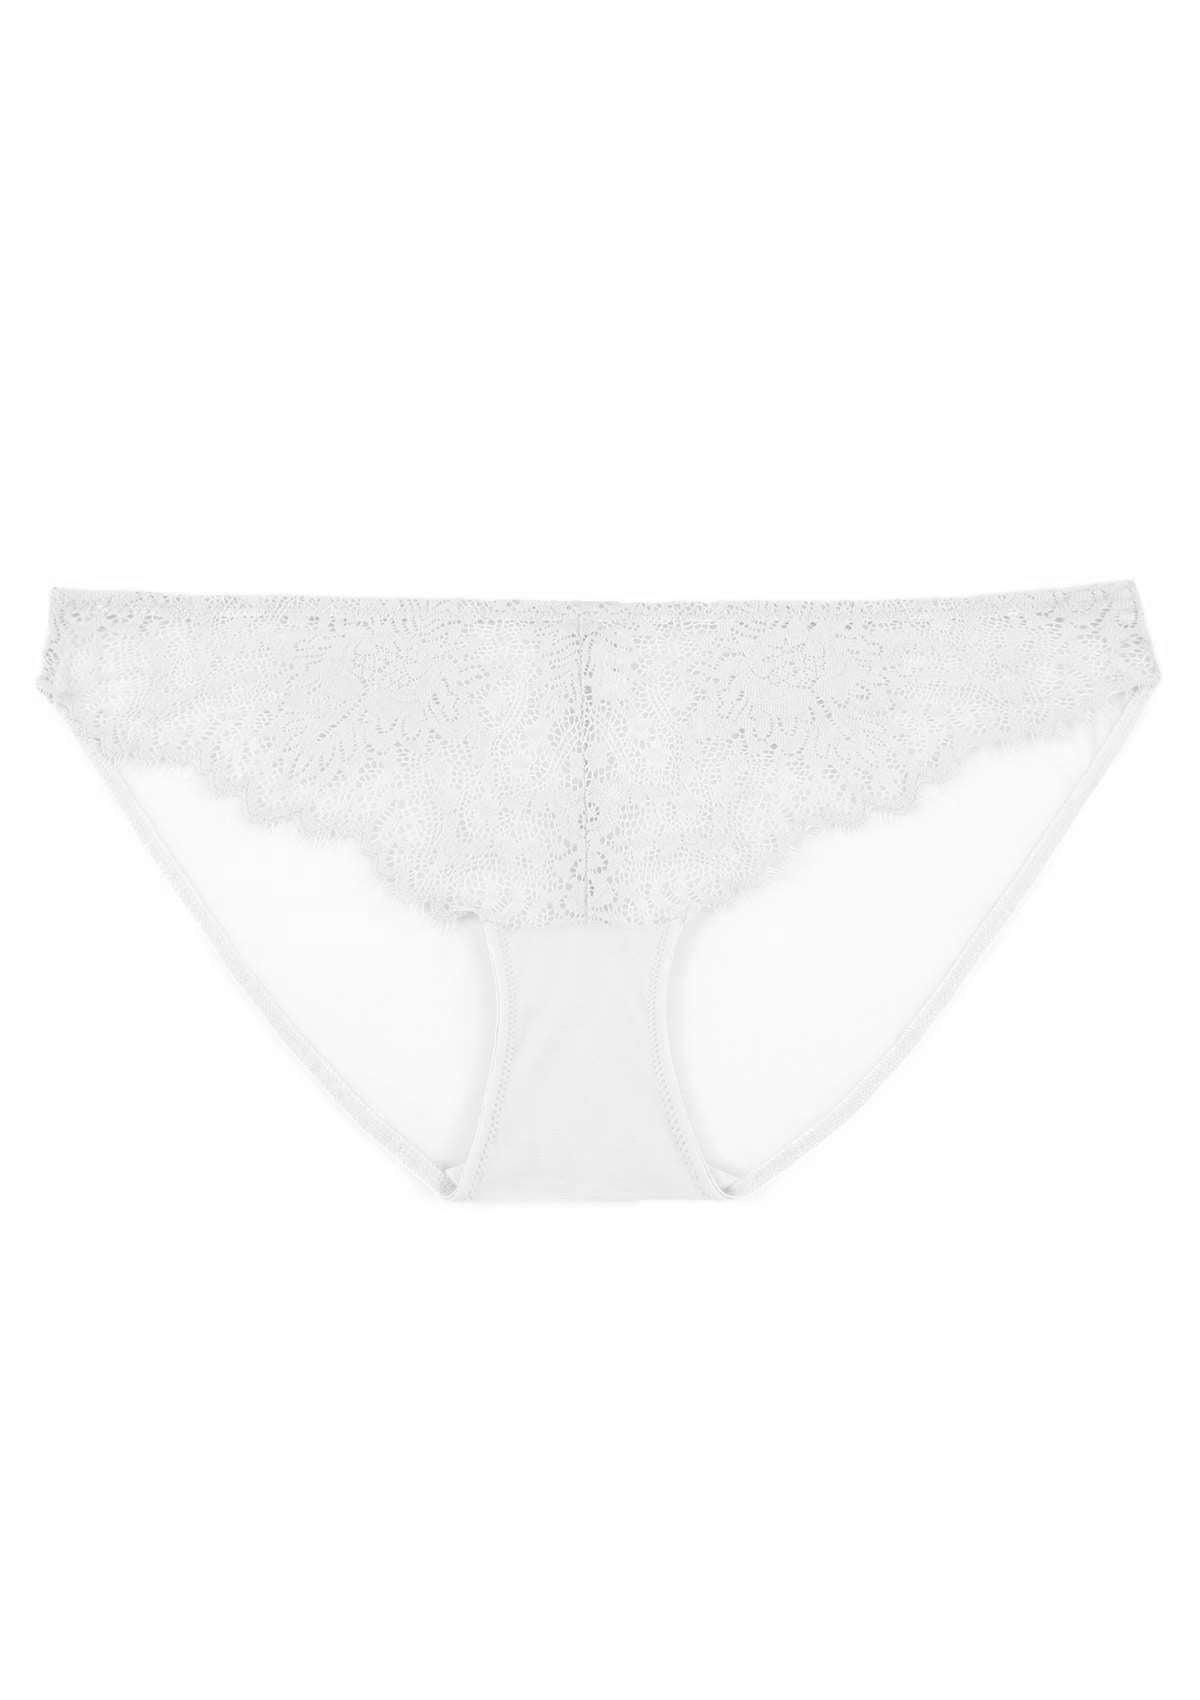 HSIA Sunflower Exquisite White Lace Bikini Underwear - L / High-Rise Brief / White